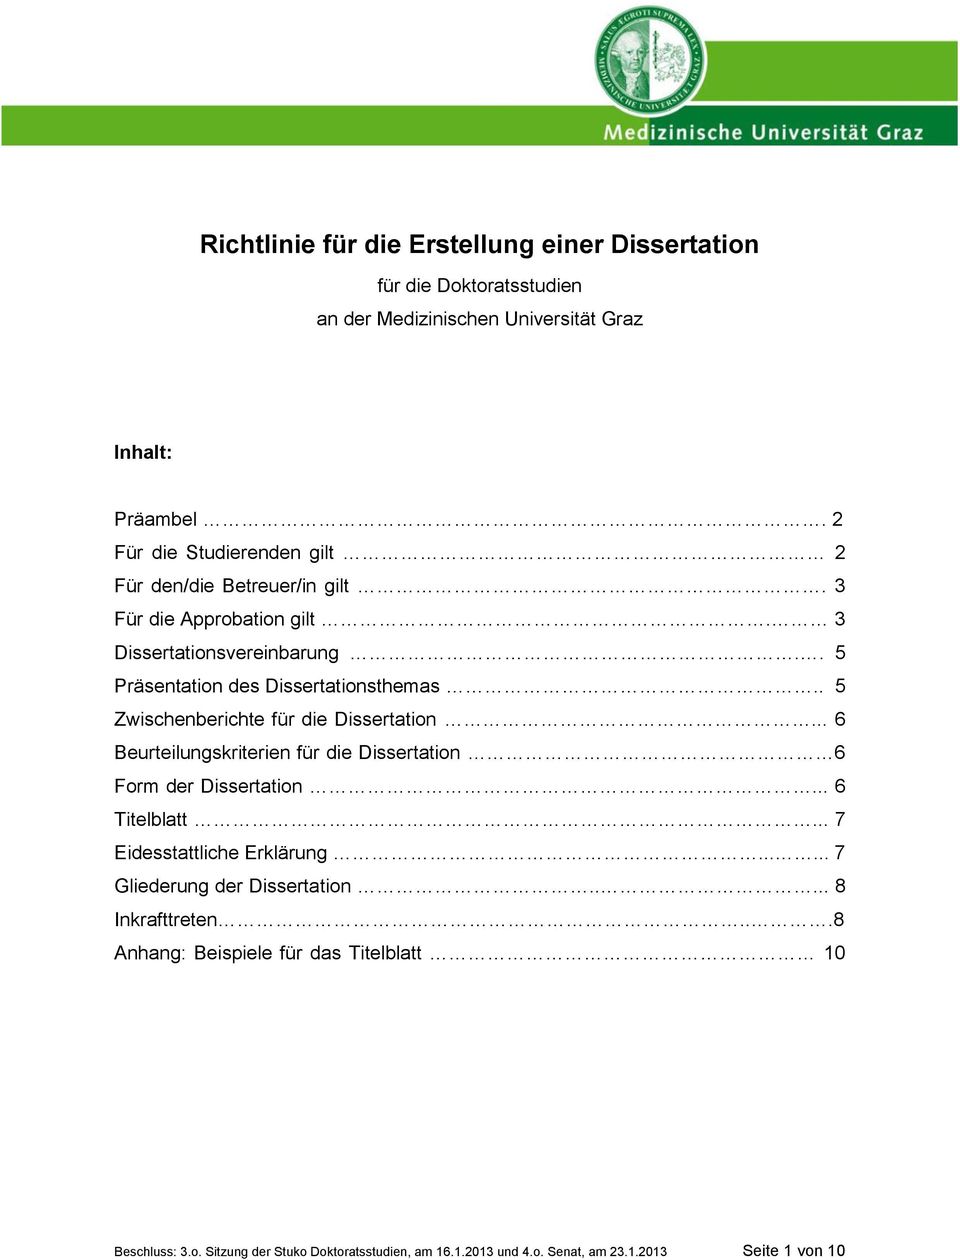 . 5 Zwischenberichte für die Dissertation... 6 Beurteilungskriterien für die Dissertation 6 Form der Dissertation... 6 Titelblatt... 7 Eidesstattliche Erklärung.